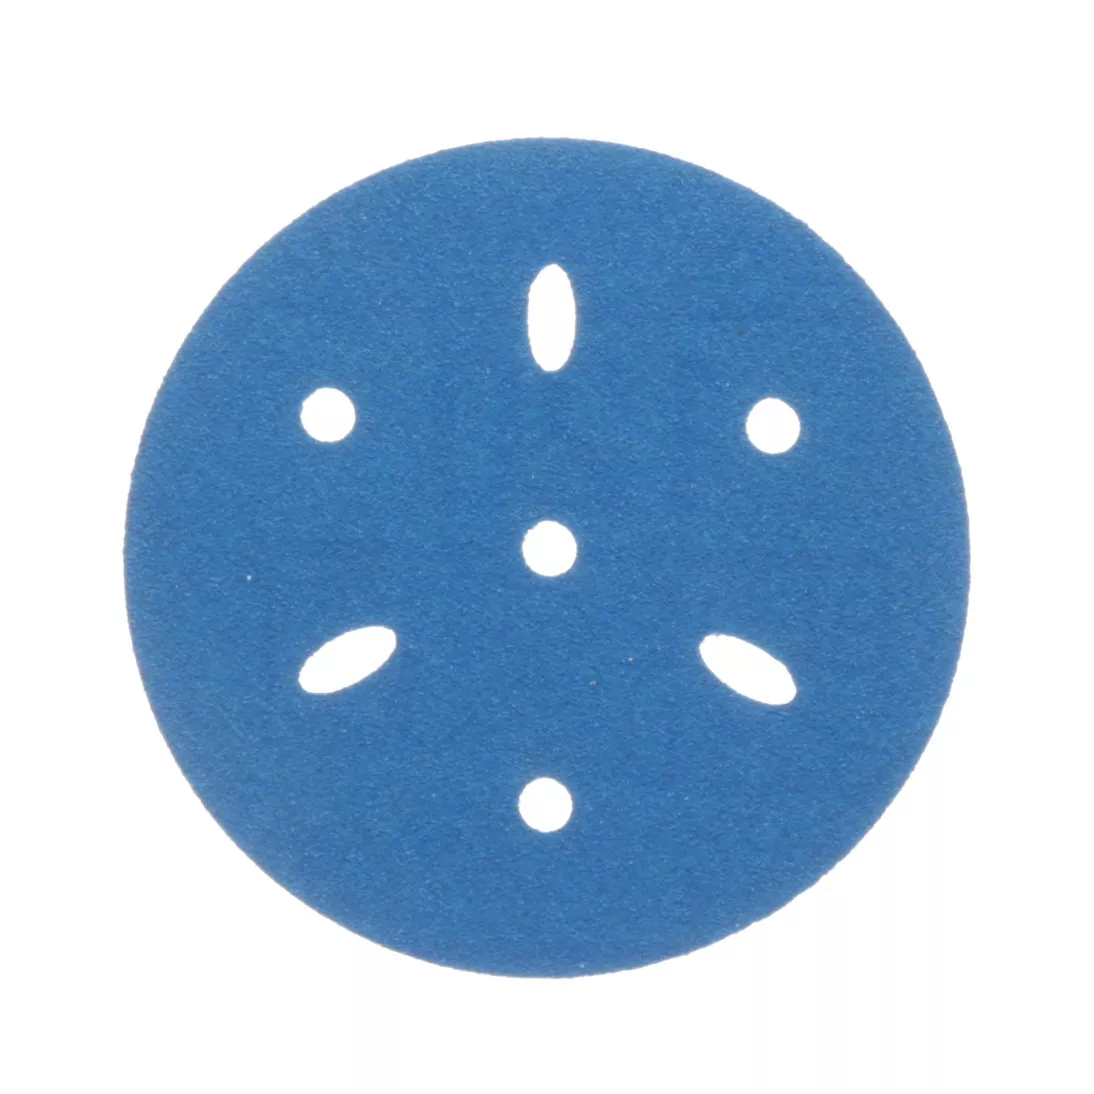 3M™ Hookit™ Blue Abrasive Disc Multi-hole, 36144, 3 in, 120 grade, 50
discs per carton, 4 cartons per case